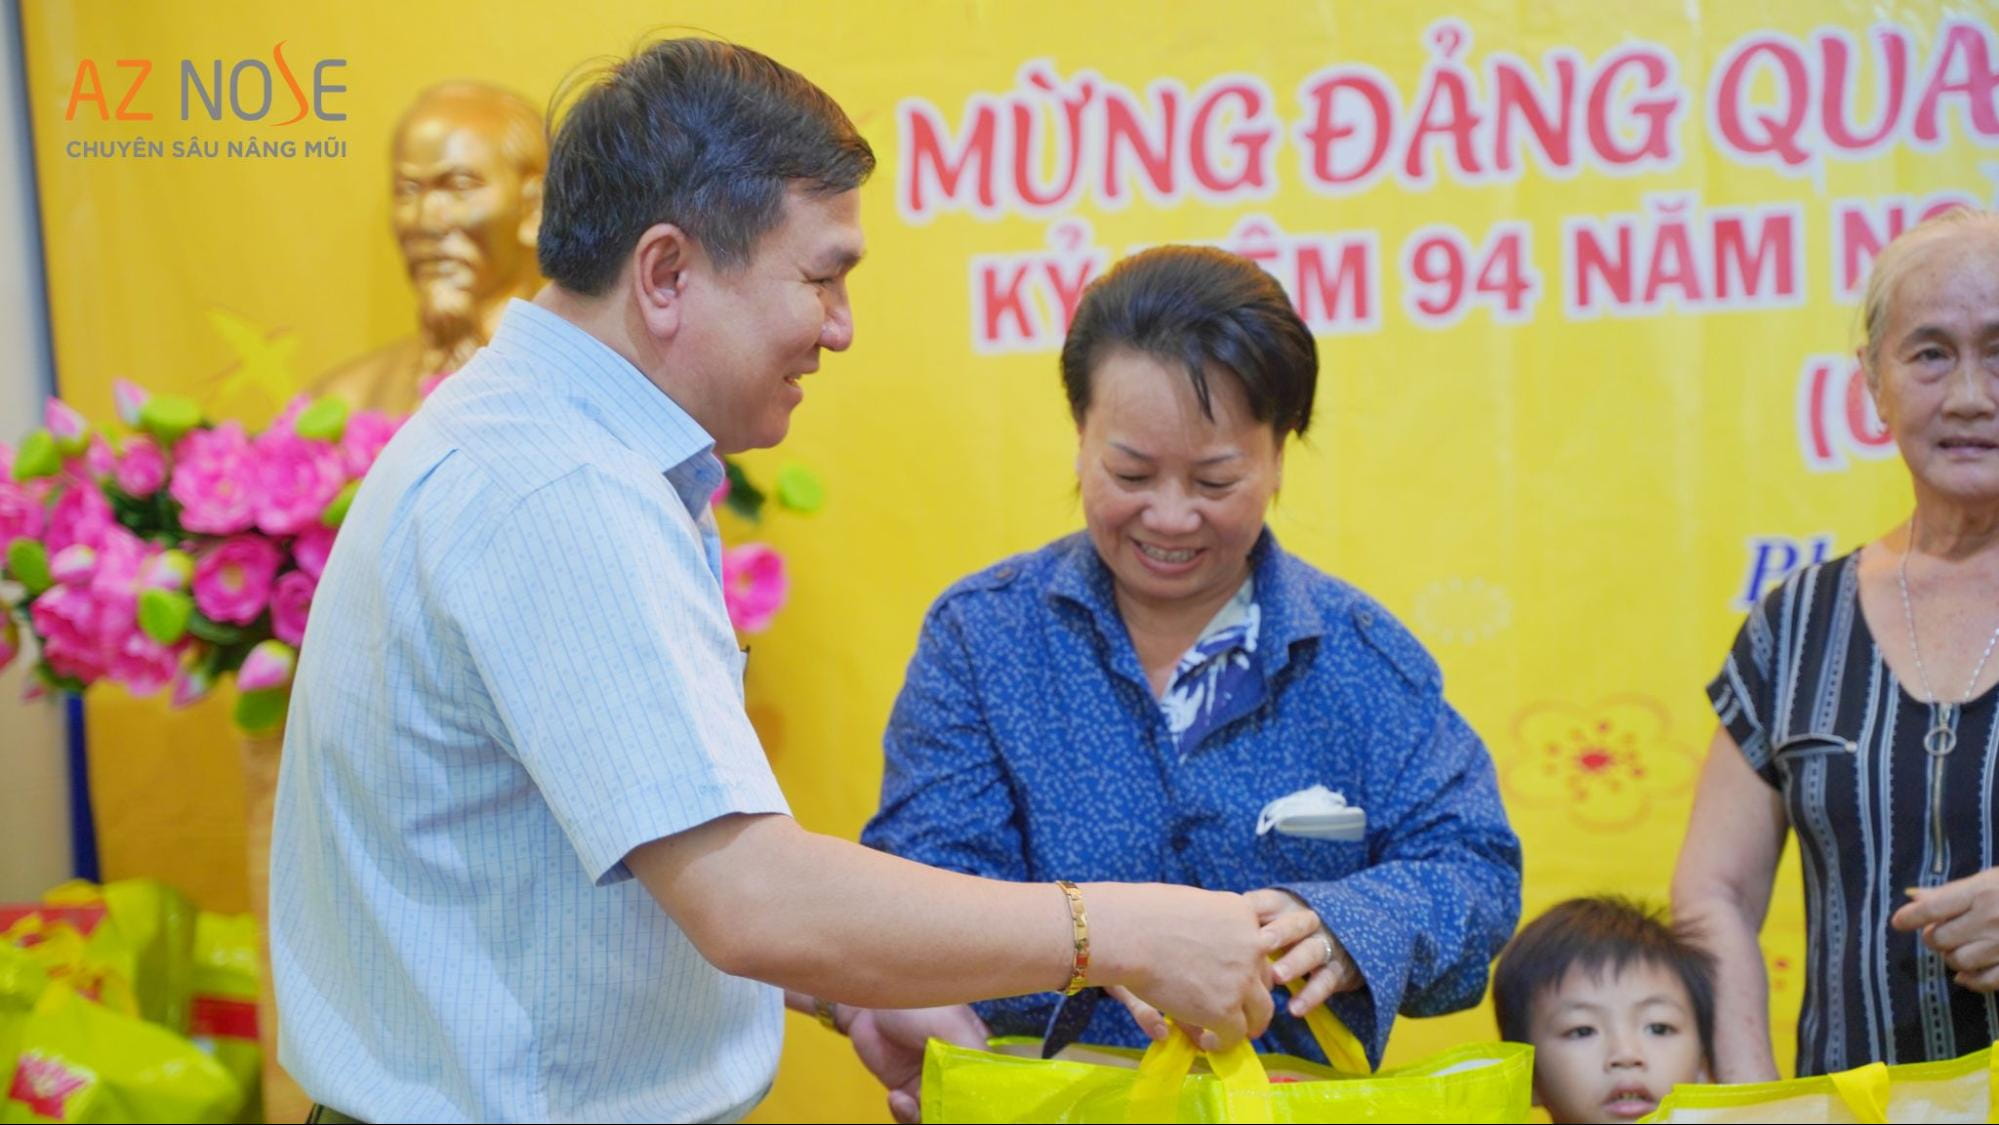 Bác sĩ CKI. Nguyễn Hoàng Nam trao quà và trò chuyện với người dân tại đây